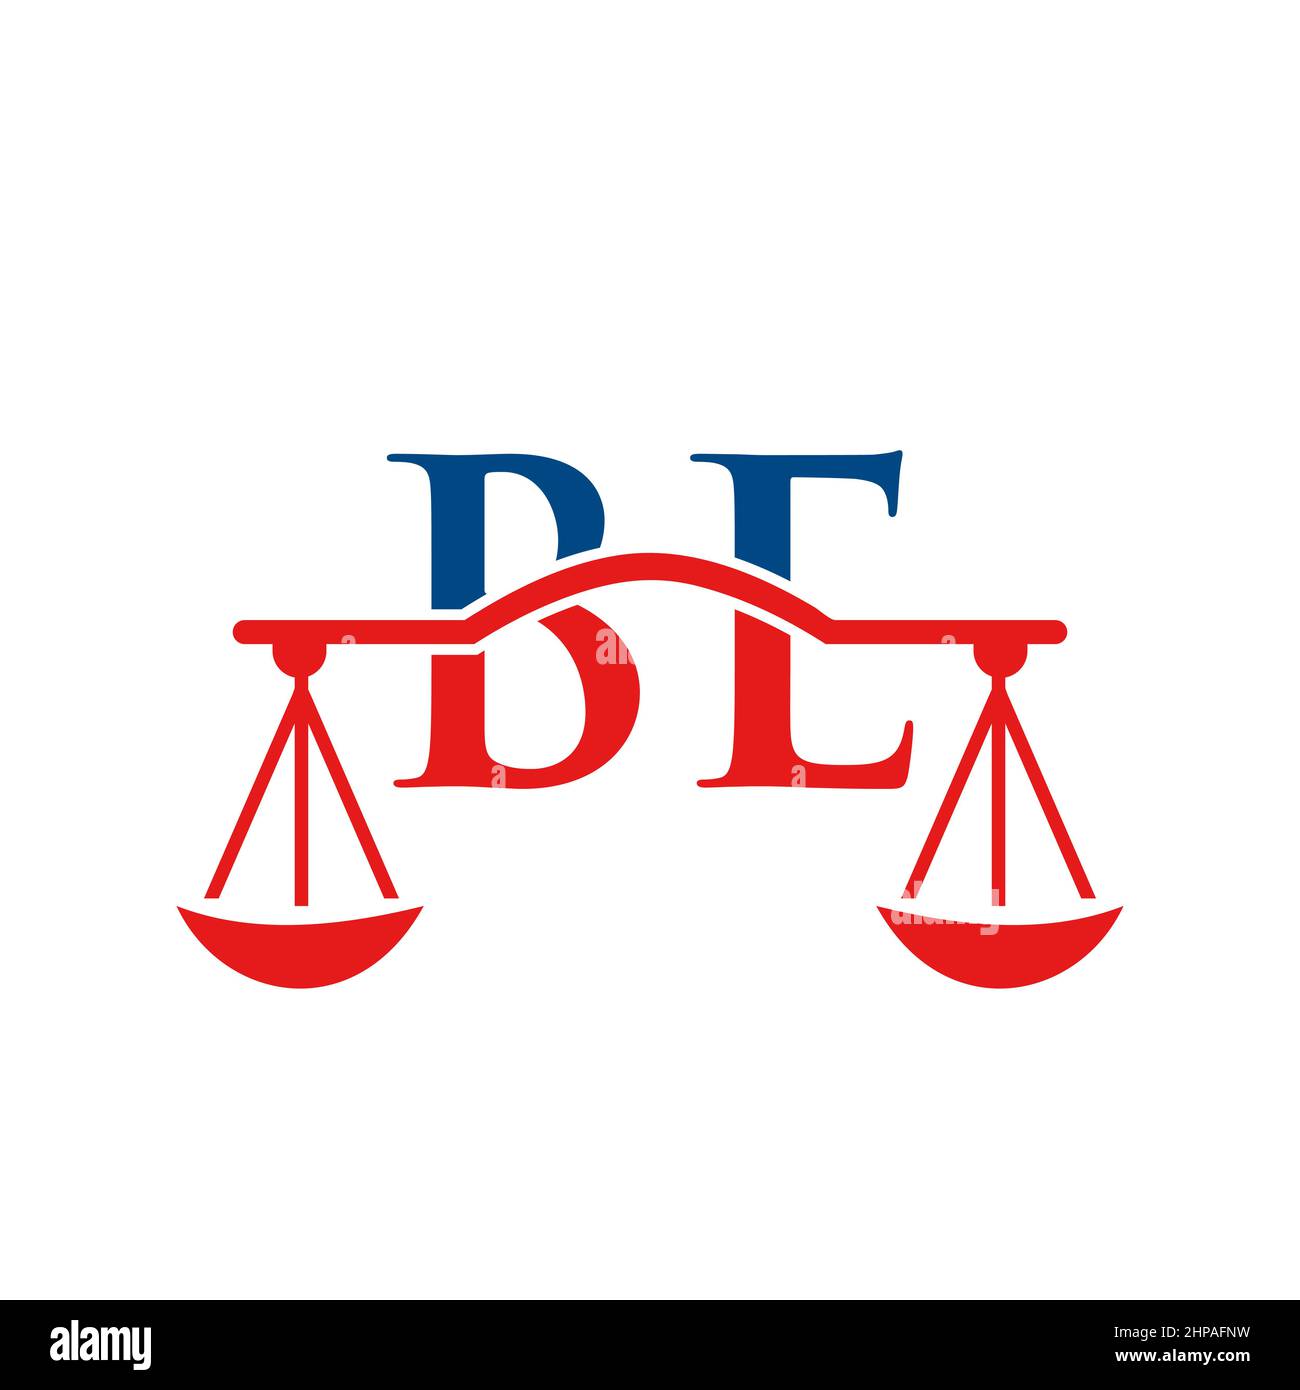 Studio legale Letter BE Logo Design. Avvocato, Giustizia, avvocato, legale, avvocato, Ufficio legale, Scale. Logo della legge sul cartello con la lettera BE Illustrazione Vettoriale